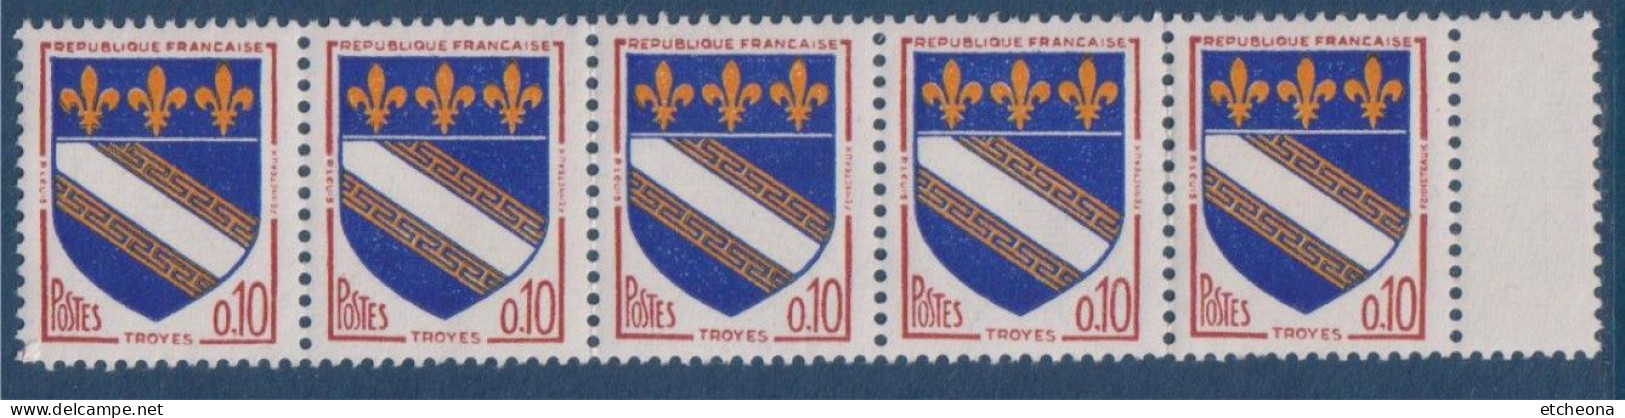 Troyes Armoiries De Villes IV N°1353 Bande De 5 Timbres Neufs Avec Pont De Feuille à Droite - 1941-66 Stemmi E Stendardi